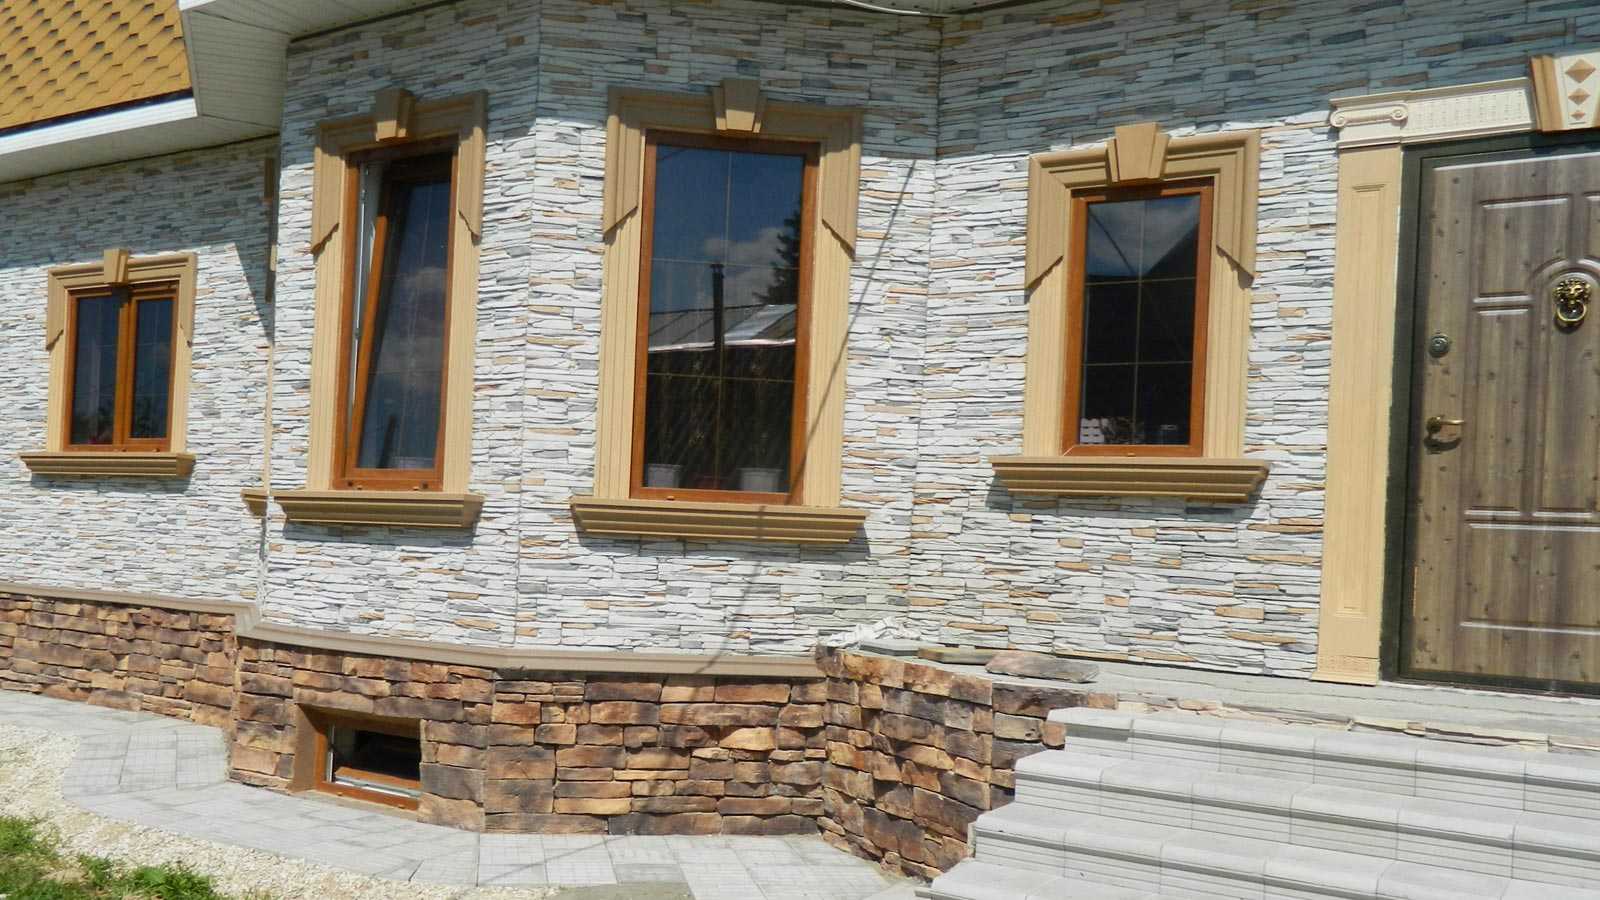 Облицовка фасада камнем: наружная отделка частного дома декоративным камнем при помощи морозостойкого клея